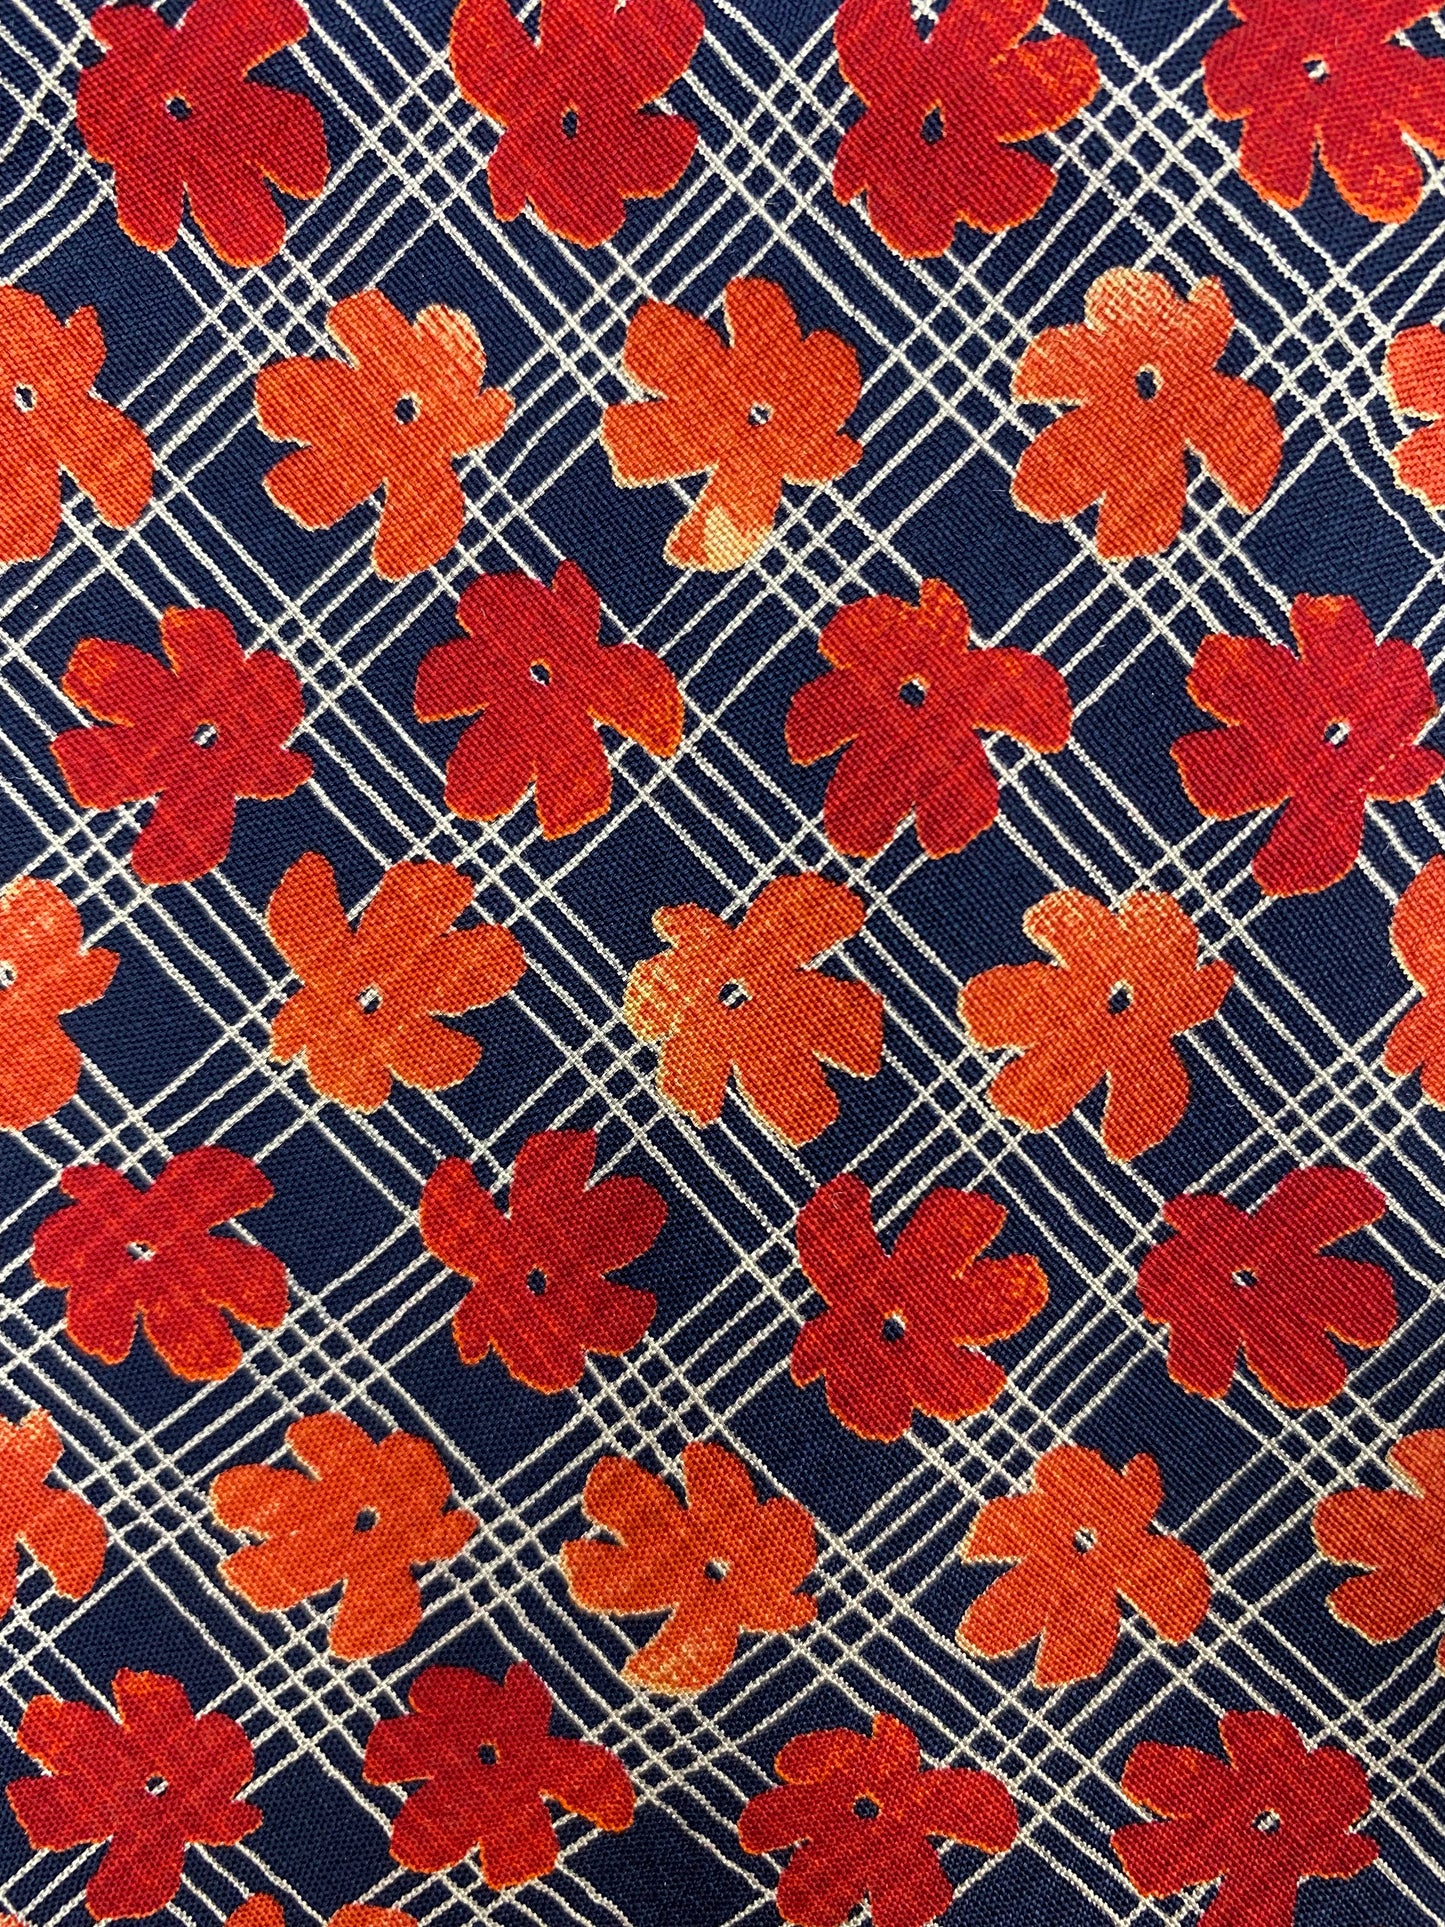 Close-up detail of: 90s Deadstock Silk Necktie, Men's Vintage Navy/ Orange/ Red Floral Pattern Tie, NOS